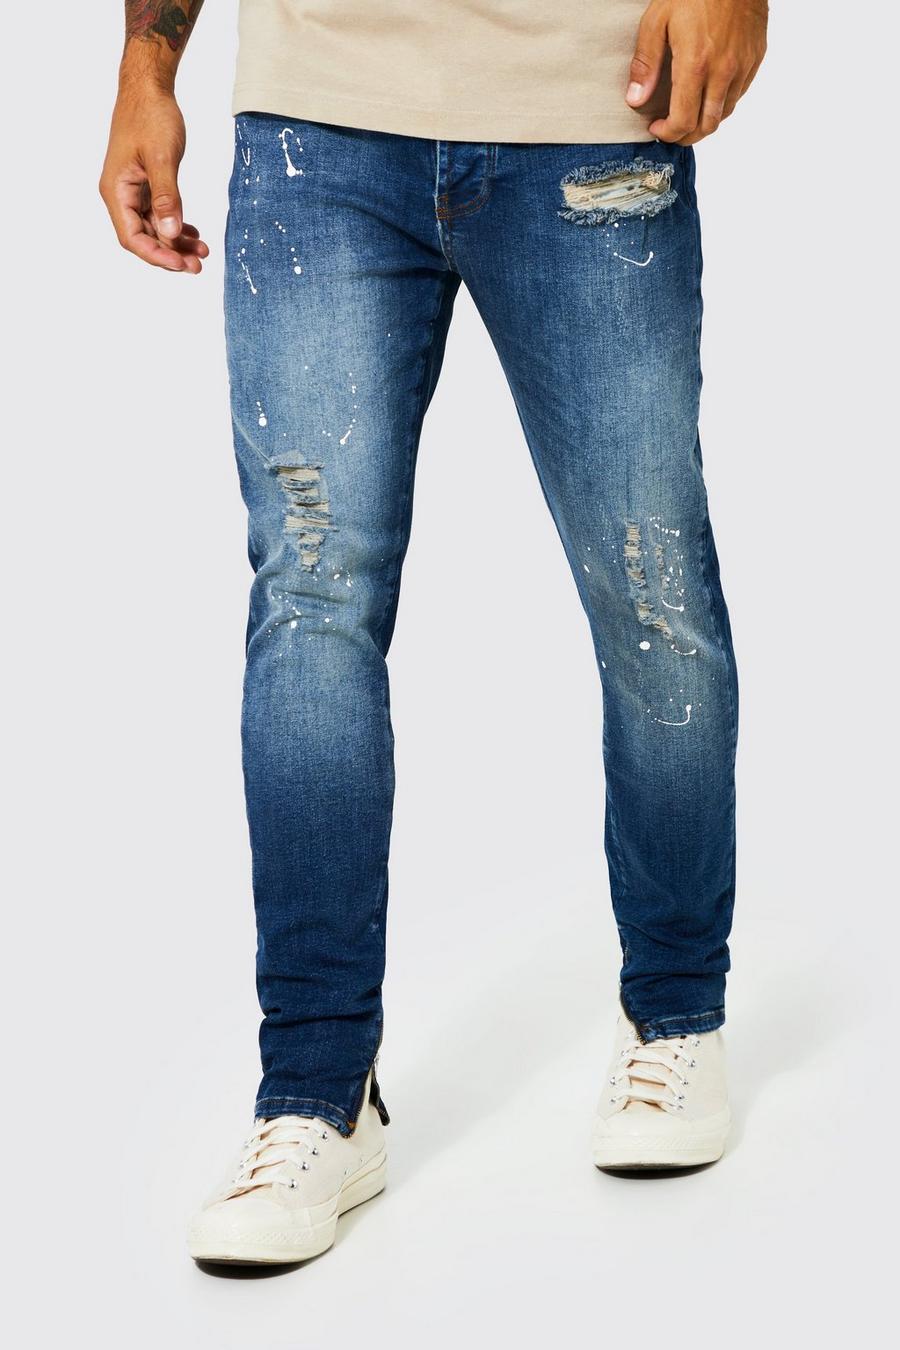 Wapenstilstand Specialiteit bezorgdheid Gescheurde Skinny Jeans Met Verfspetters En Rits | boohoo